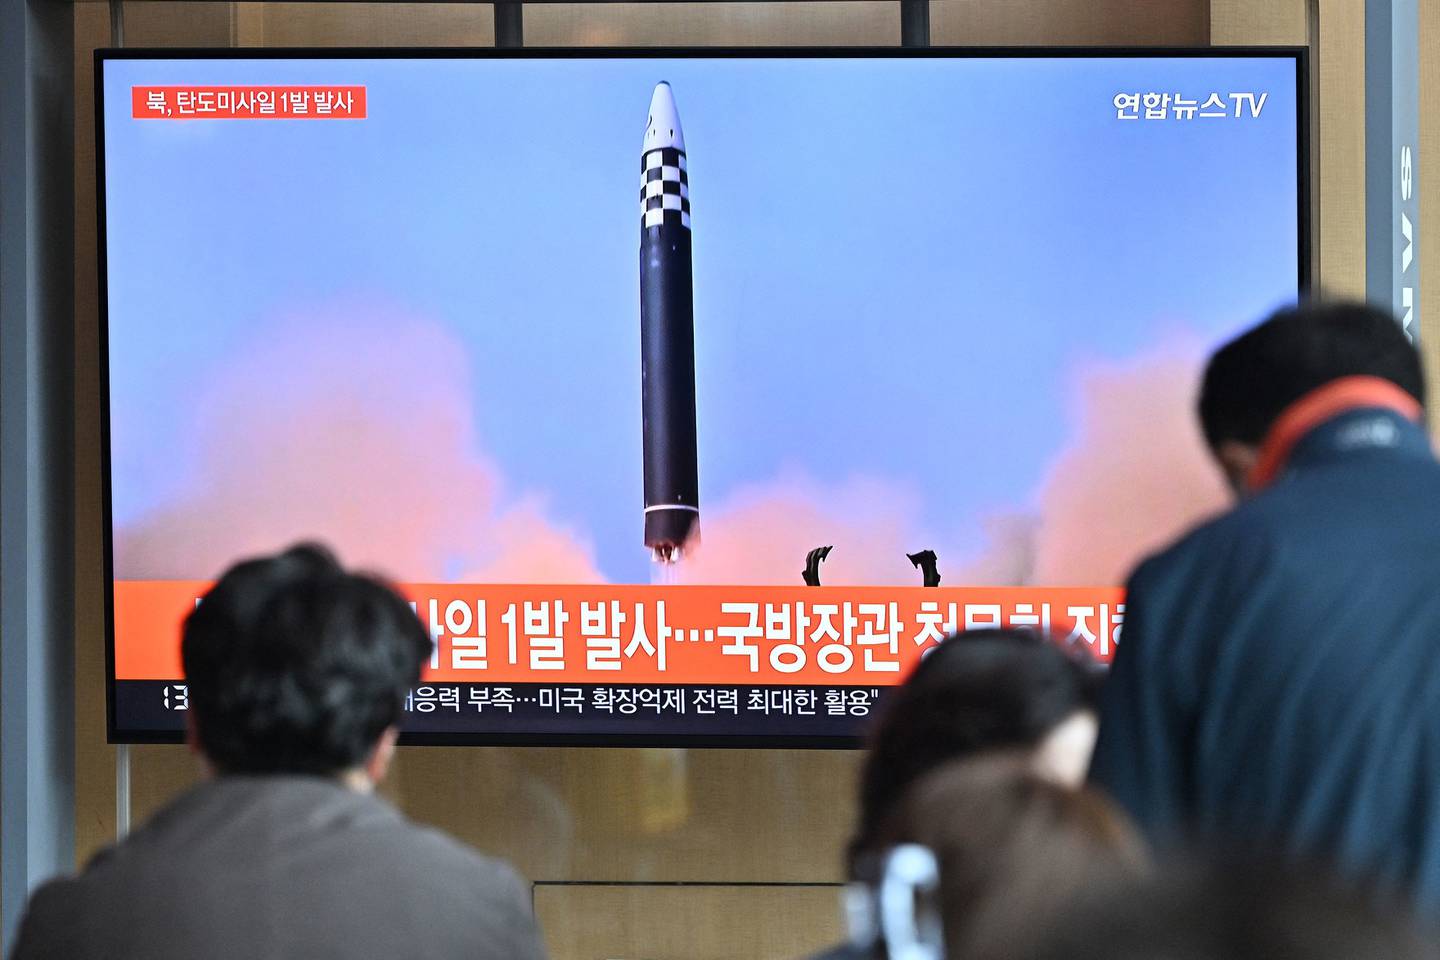 Personas miran una pantalla de televisión que muestra un noticiero con imágenes de archivo de una prueba de misiles de Corea del Norte, en una estación de tren en Seúl el 4 de mayo de 2022.